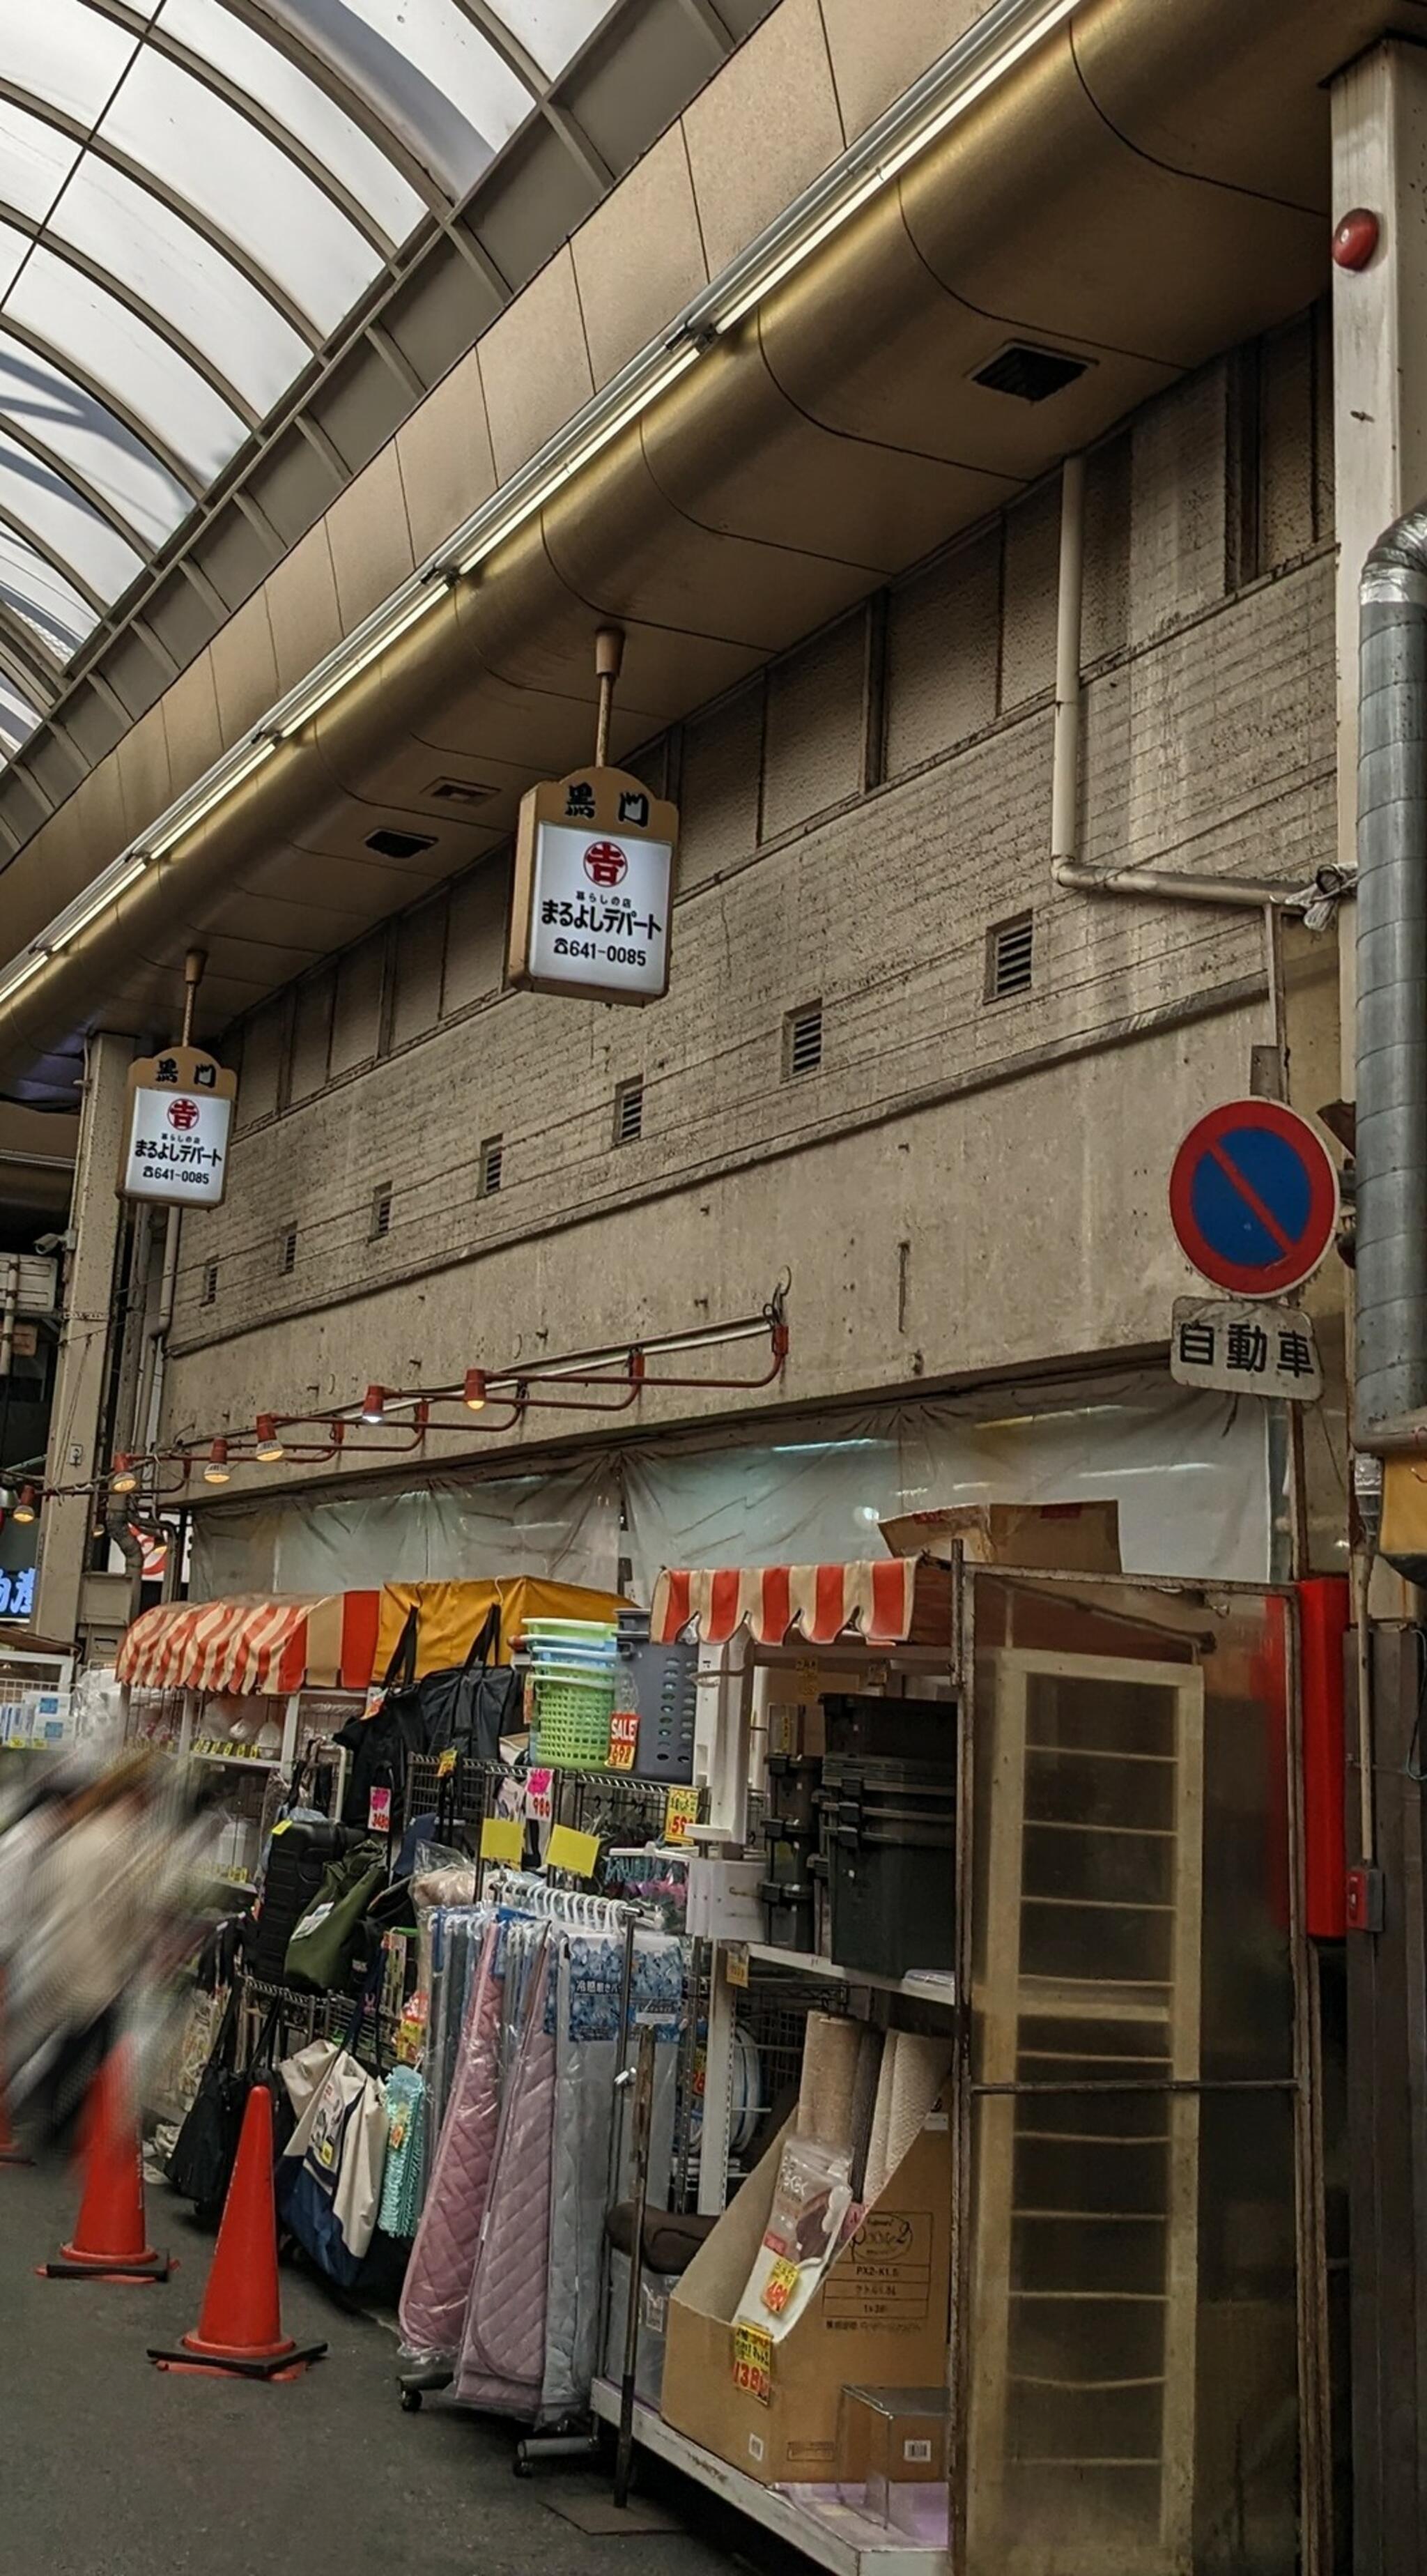 まるよし デパート - 大阪市中央区日本橋/日用雑貨店 | Yahoo!マップ